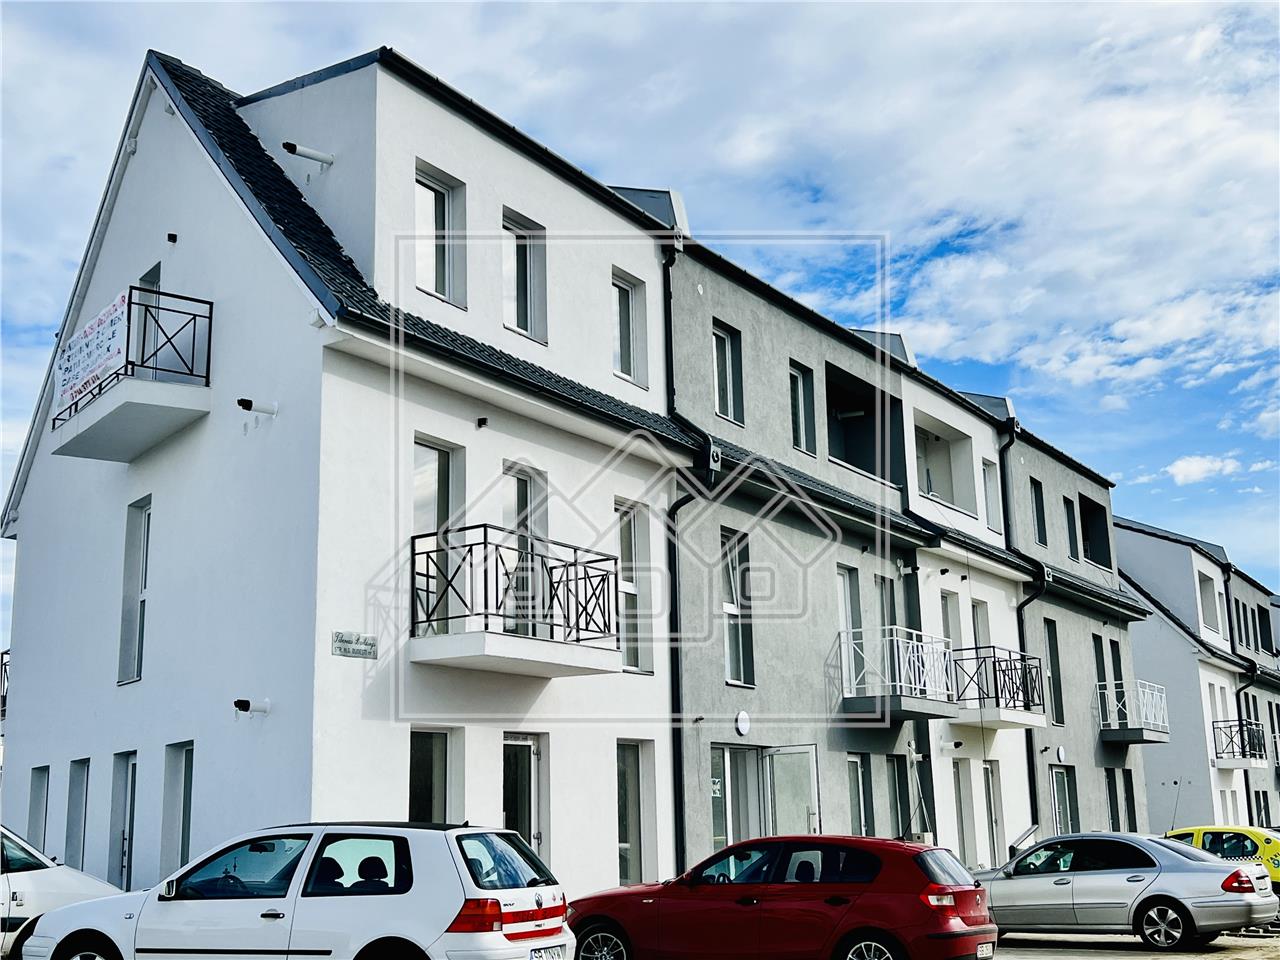 Apartament de vanzare in Sibiu - in vila - 4 camere si gradina 100 mp